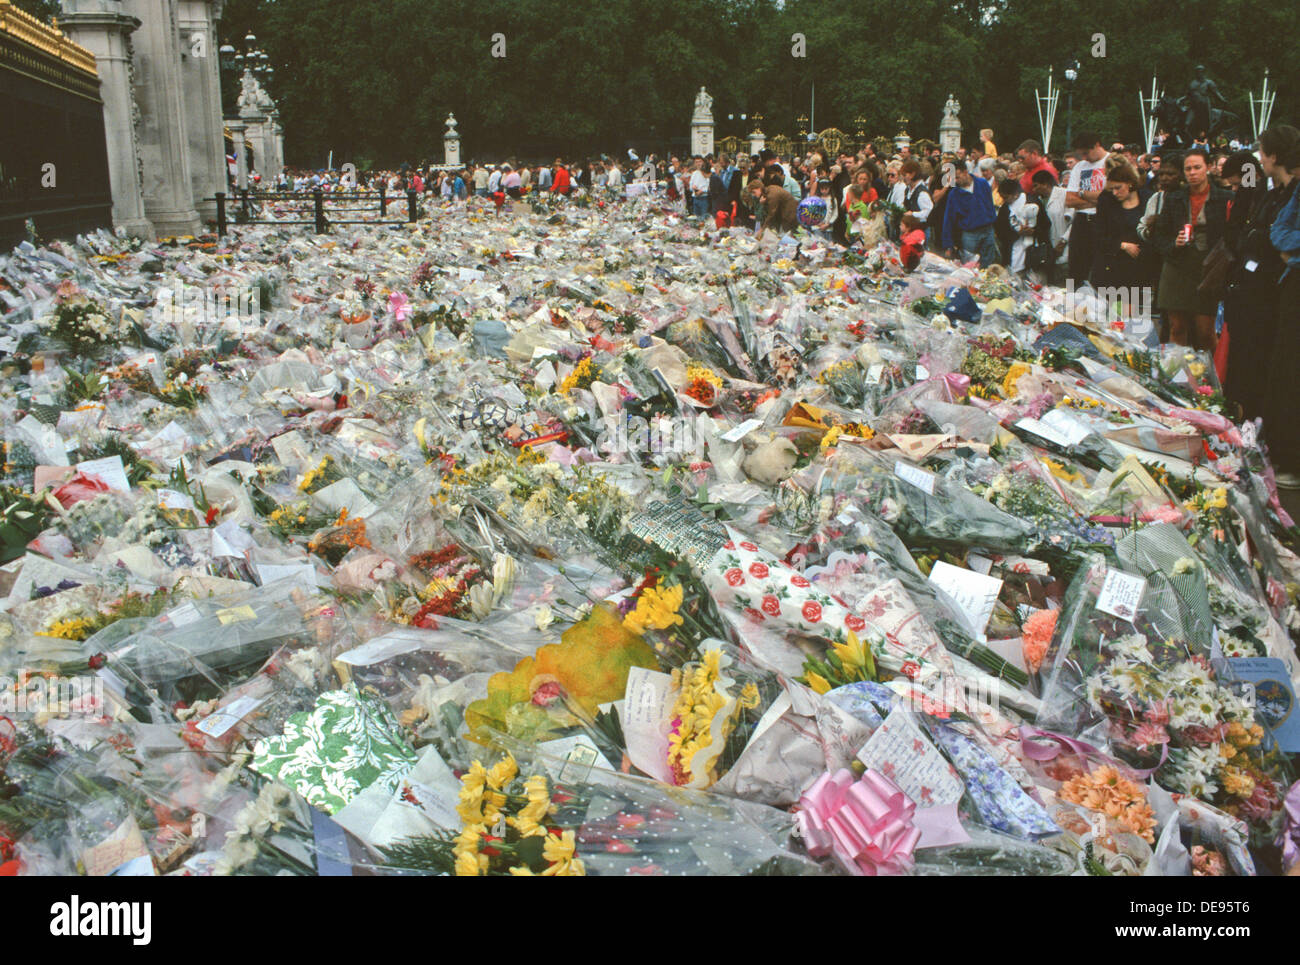 BOUQUETS DE FLEURS POSÉES EN DEHORS DE KENSINGTON PALACE PEU APRÈS LA MORT DE Lady Diana Spencer. Londres, septembre 1997. Angleterre, Royaume-Uni Banque D'Images